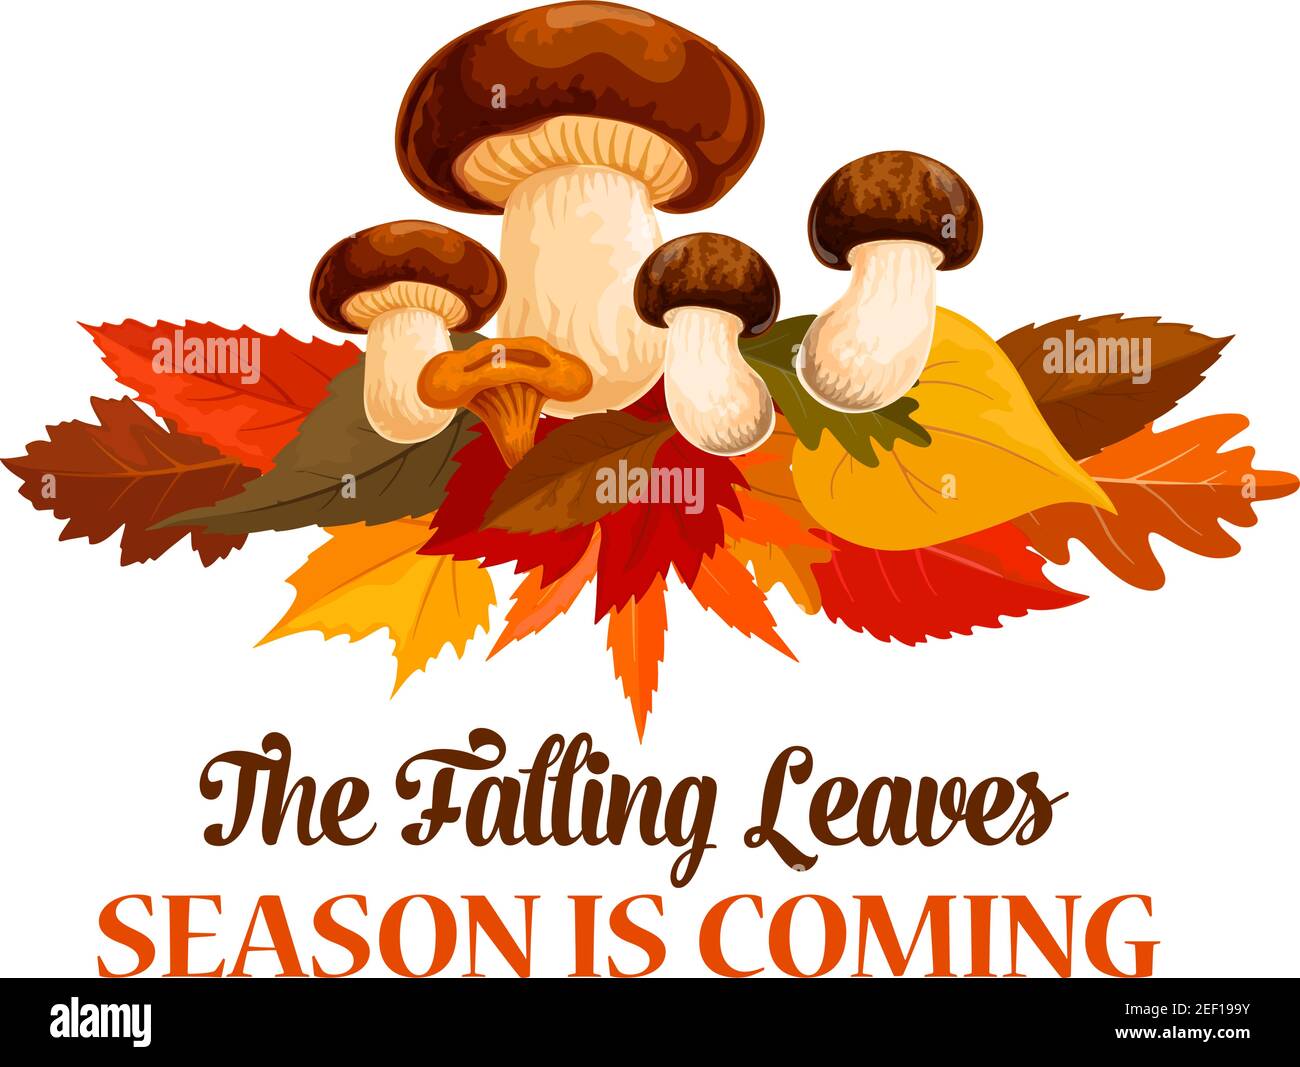 La saison d'automne est à venir affiche ou carte de voeux de la chute des feuilles et de la récolte de champignons de forêt. Vecteur temps d'automne cep porcini et chanterelle sur l'érable, Illustration de Vecteur